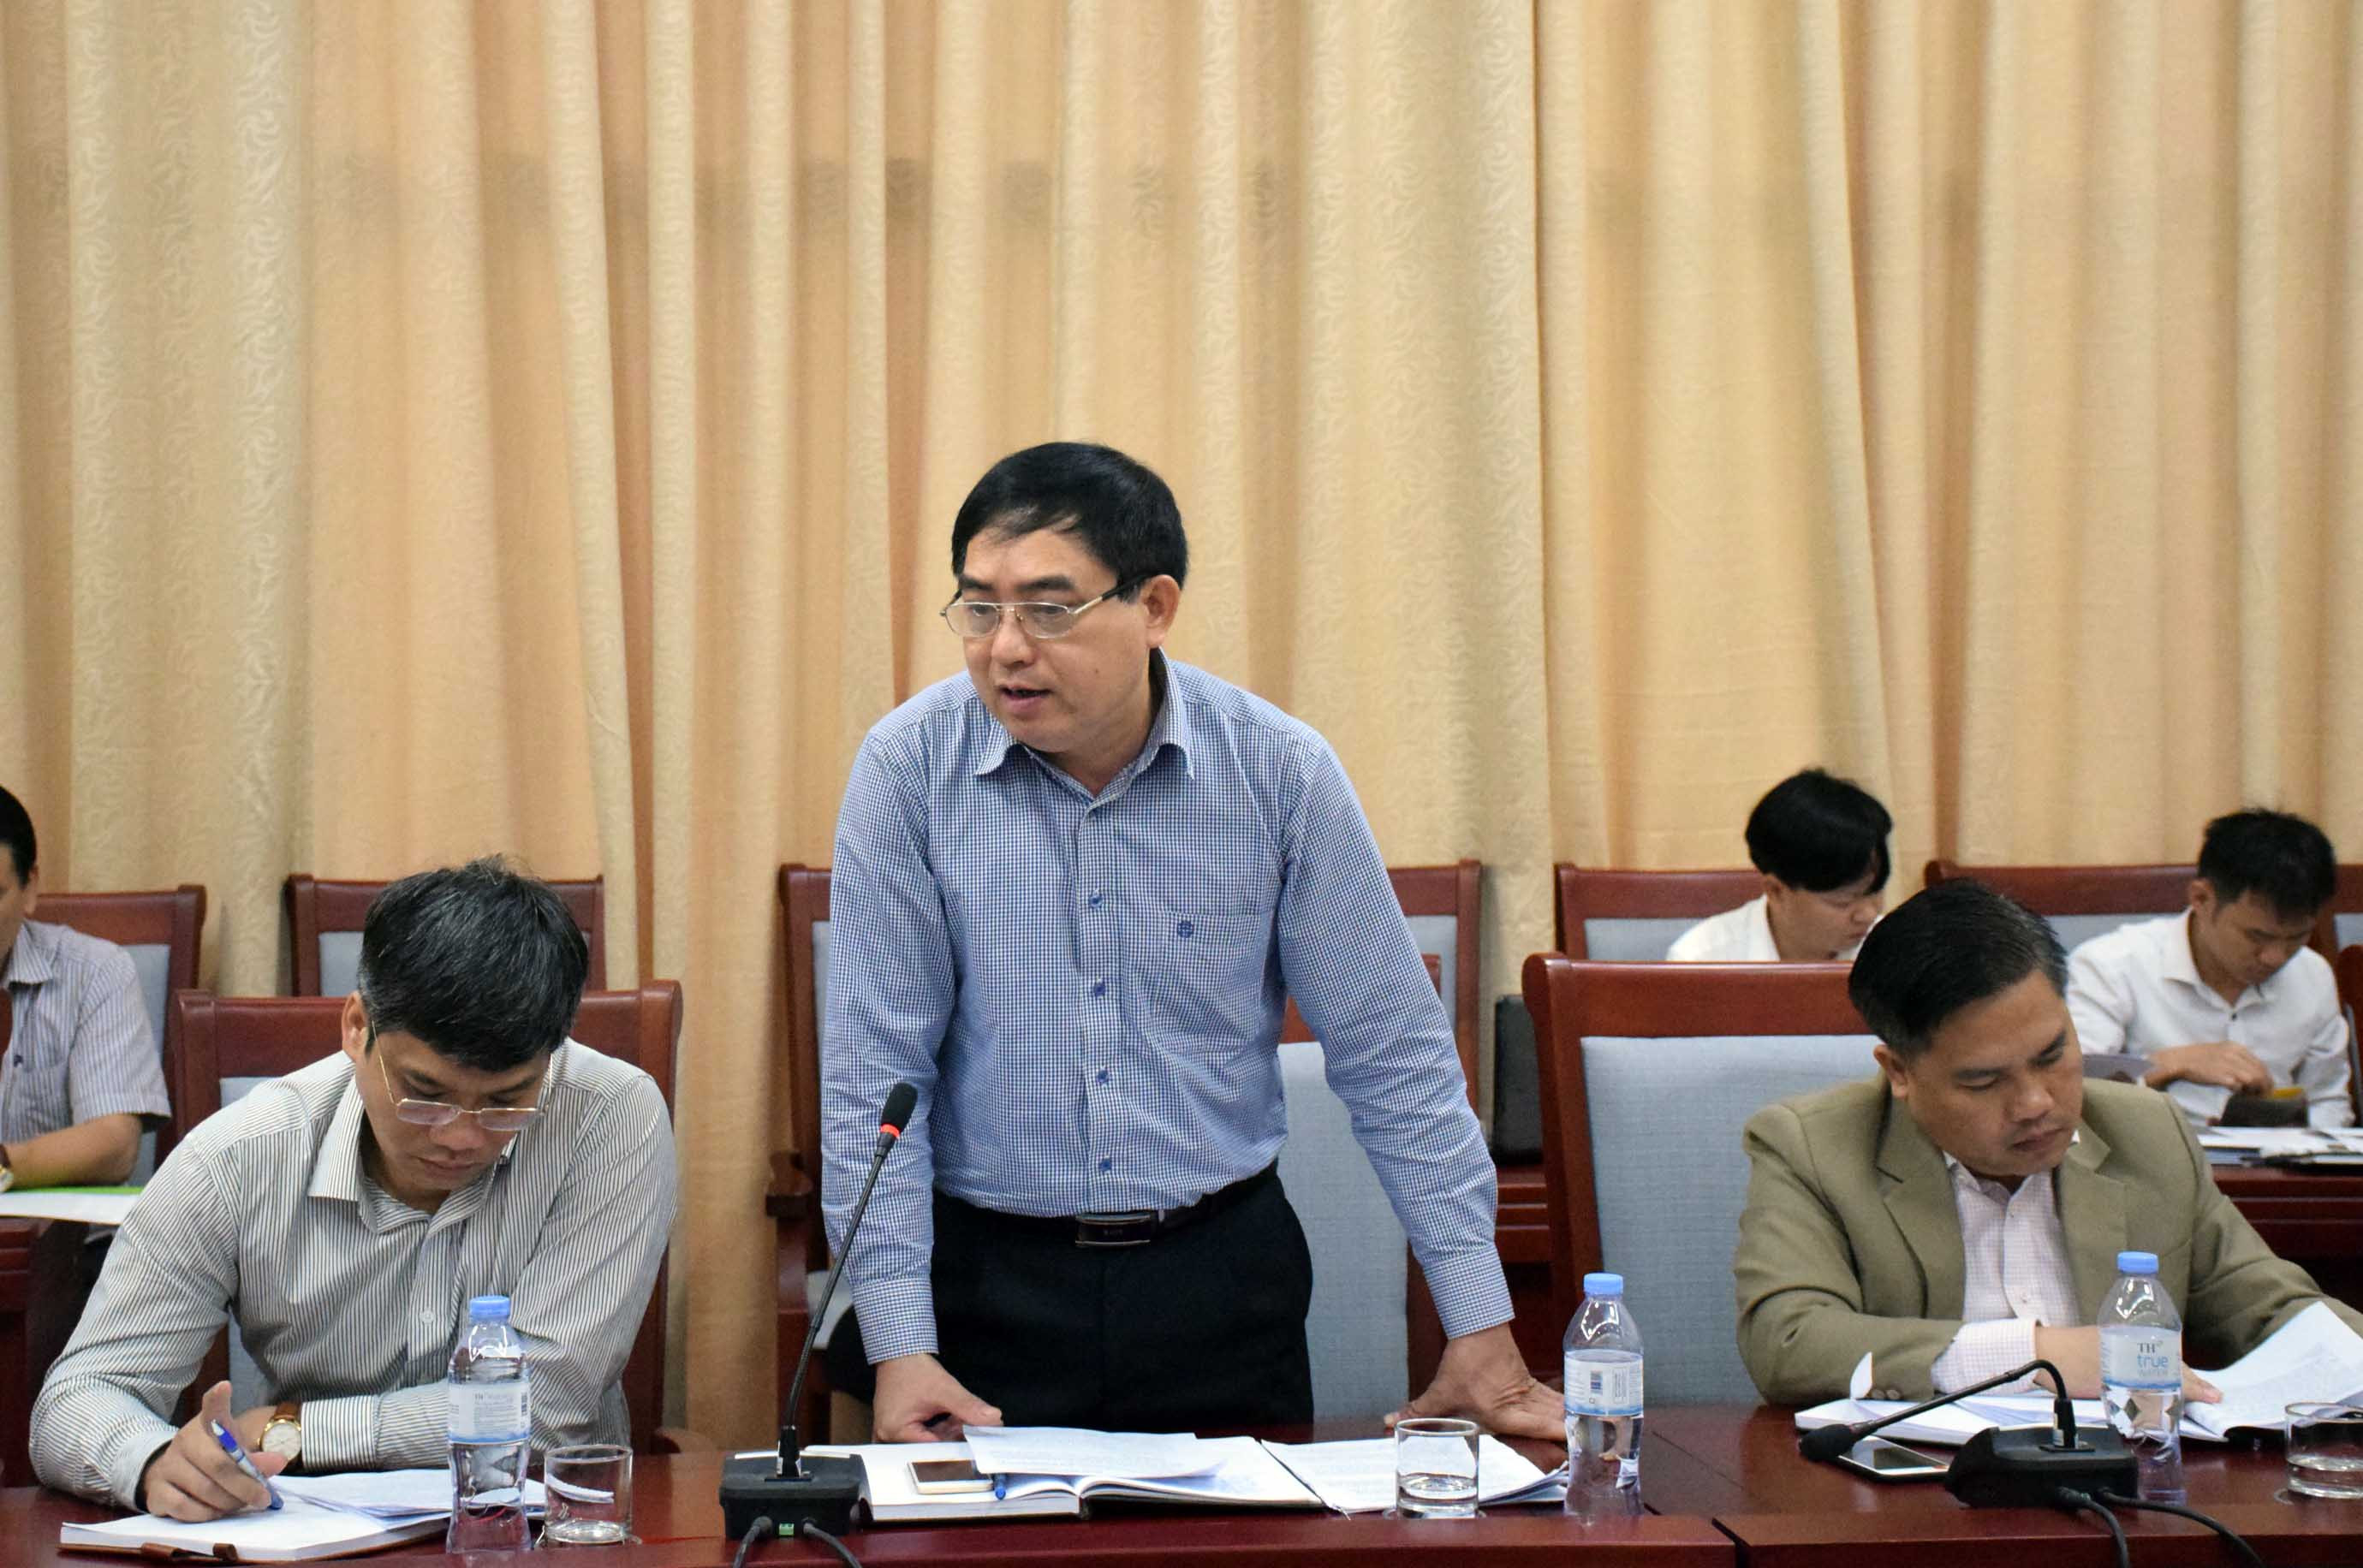 Ông Hồ Sỹ Hải - Phó Chủ tịch UBND huyện Nam Đàn báo cáo kế hoạch chuẩn bị tổ chức hội nghị. Ảnh: Xuân Hoàng